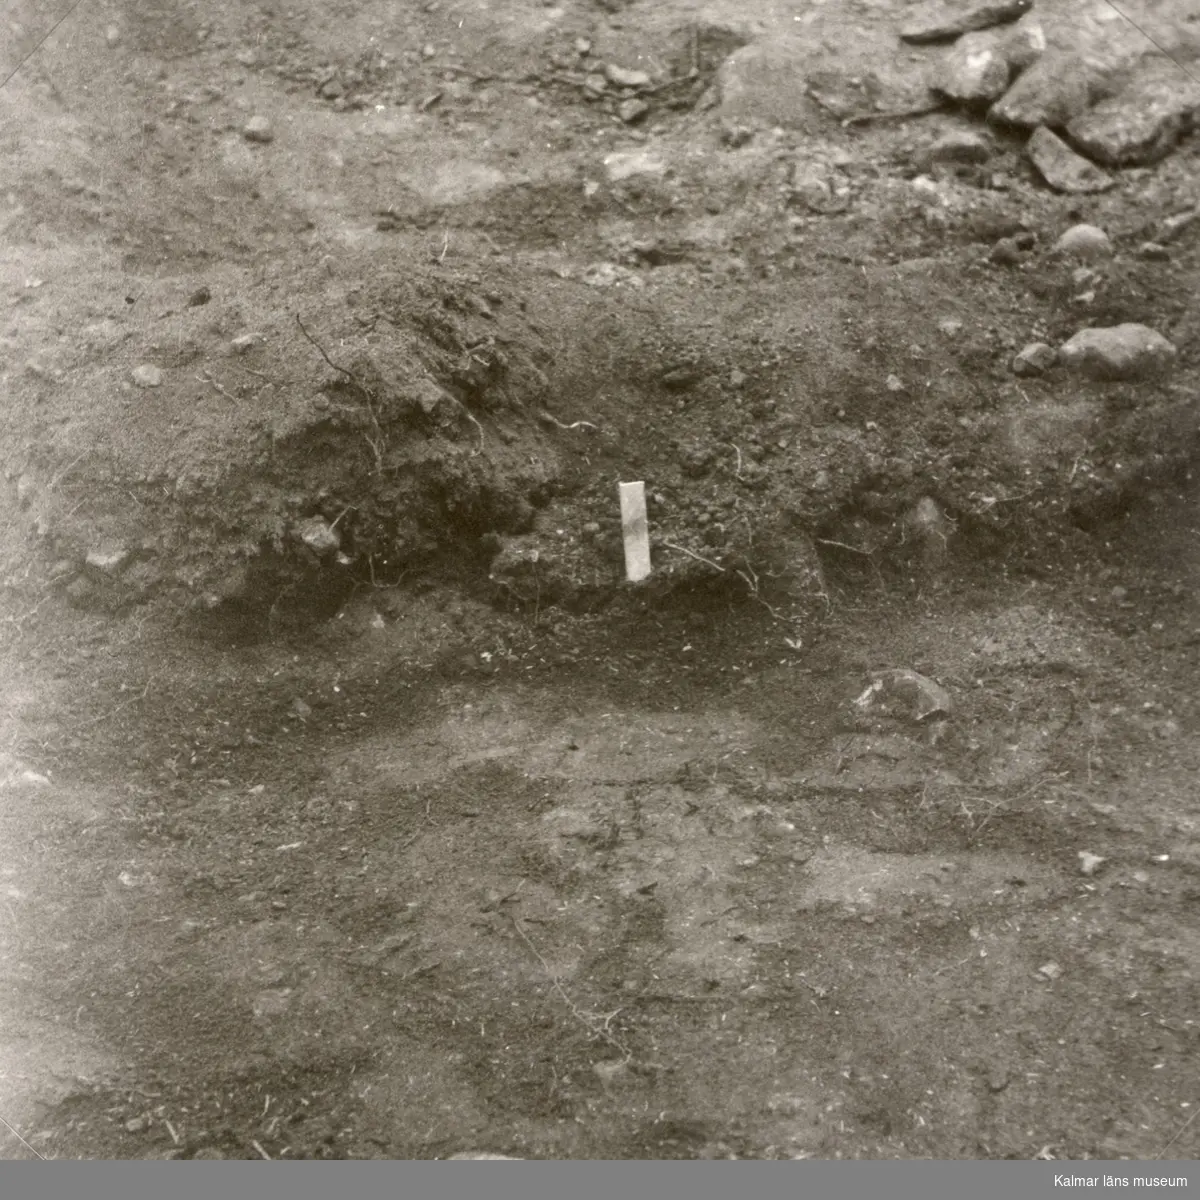 Från arkeologisk undersökning 1961. Pinnen utmärker förekomst av järnutfällning i stensträngen.